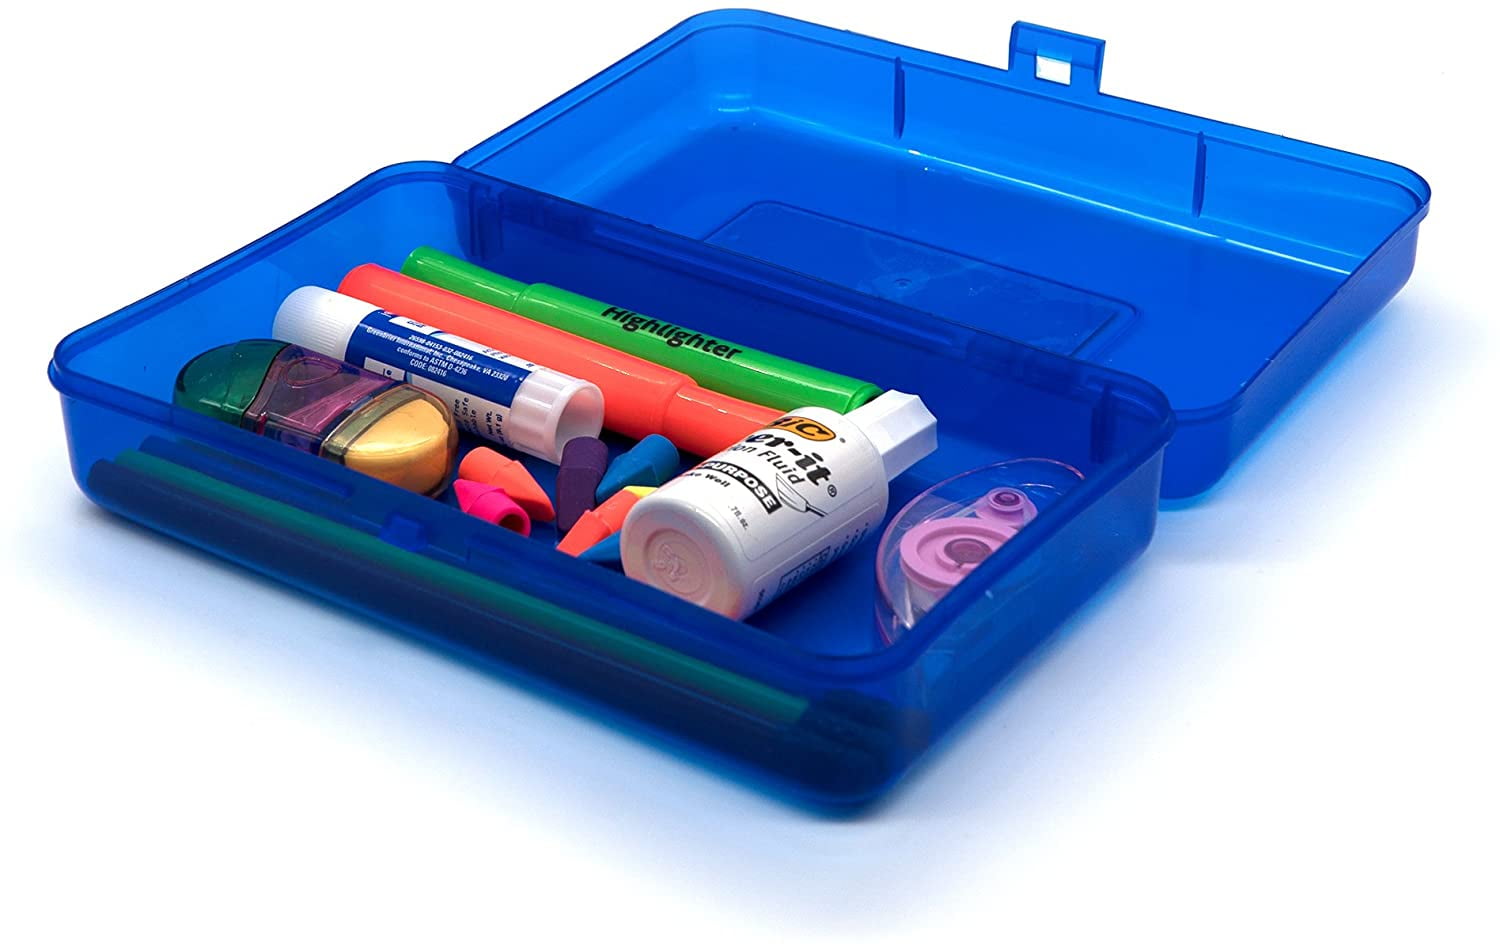 Emraw Utility Storage Box - Bright Color Multi Purpose Pencil Box for School Supplies Durable Plastic Pencil Box, Small